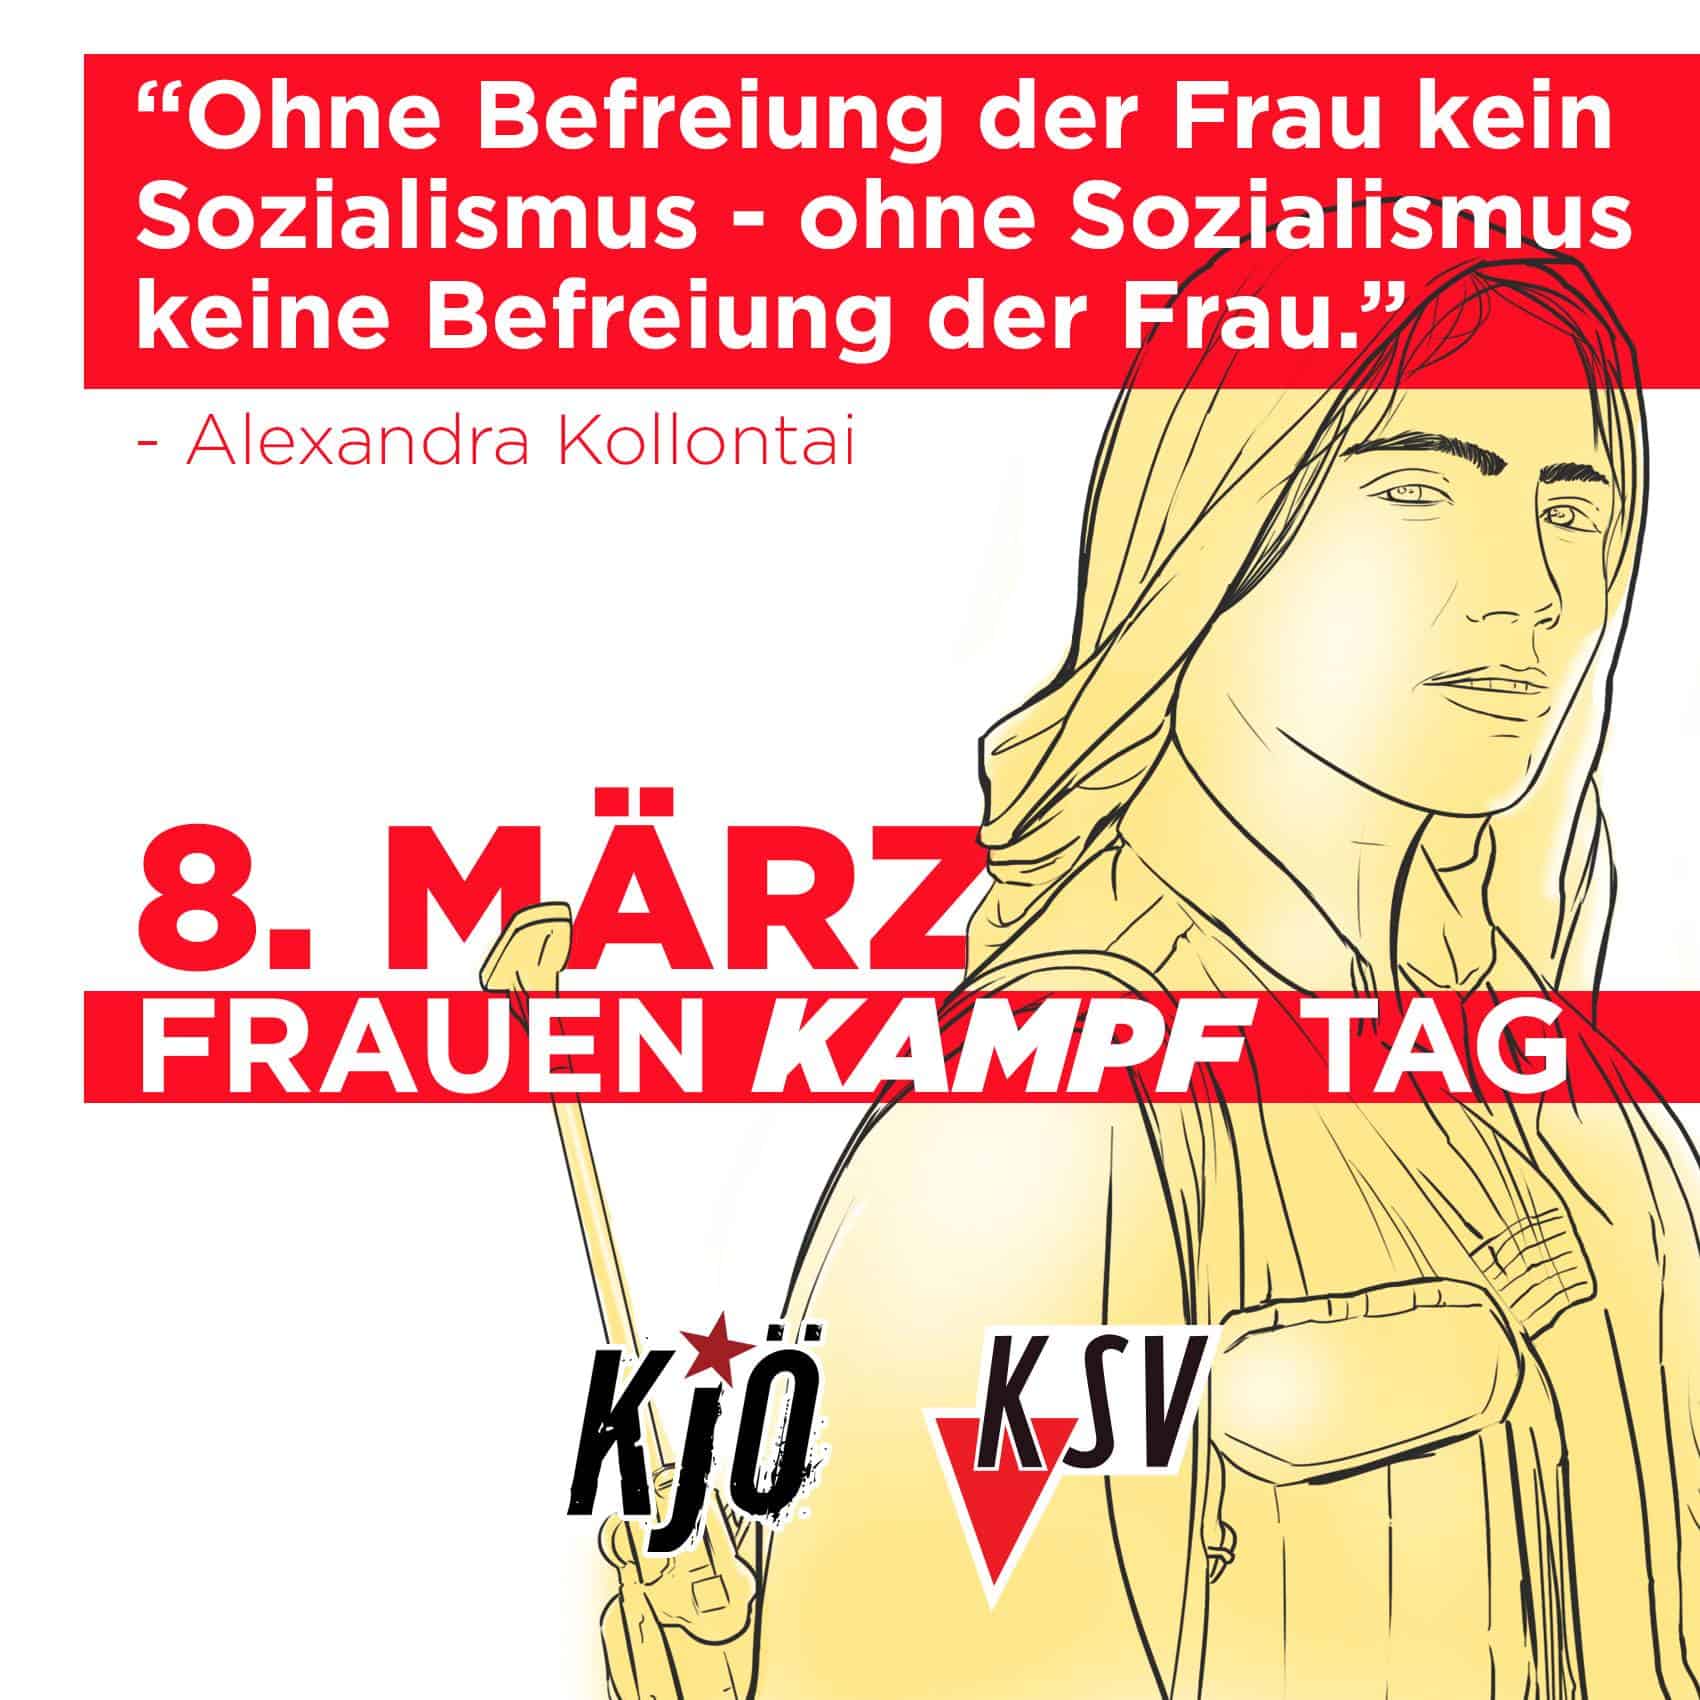 Flyer zum 8. März, dem Frauenkampftag mit einem Zitat von Alexandra Kollontai: "Ohne Befreiung der Frau kein Sozialismus - ohne Sozialismus keine Befreiung der Frau."